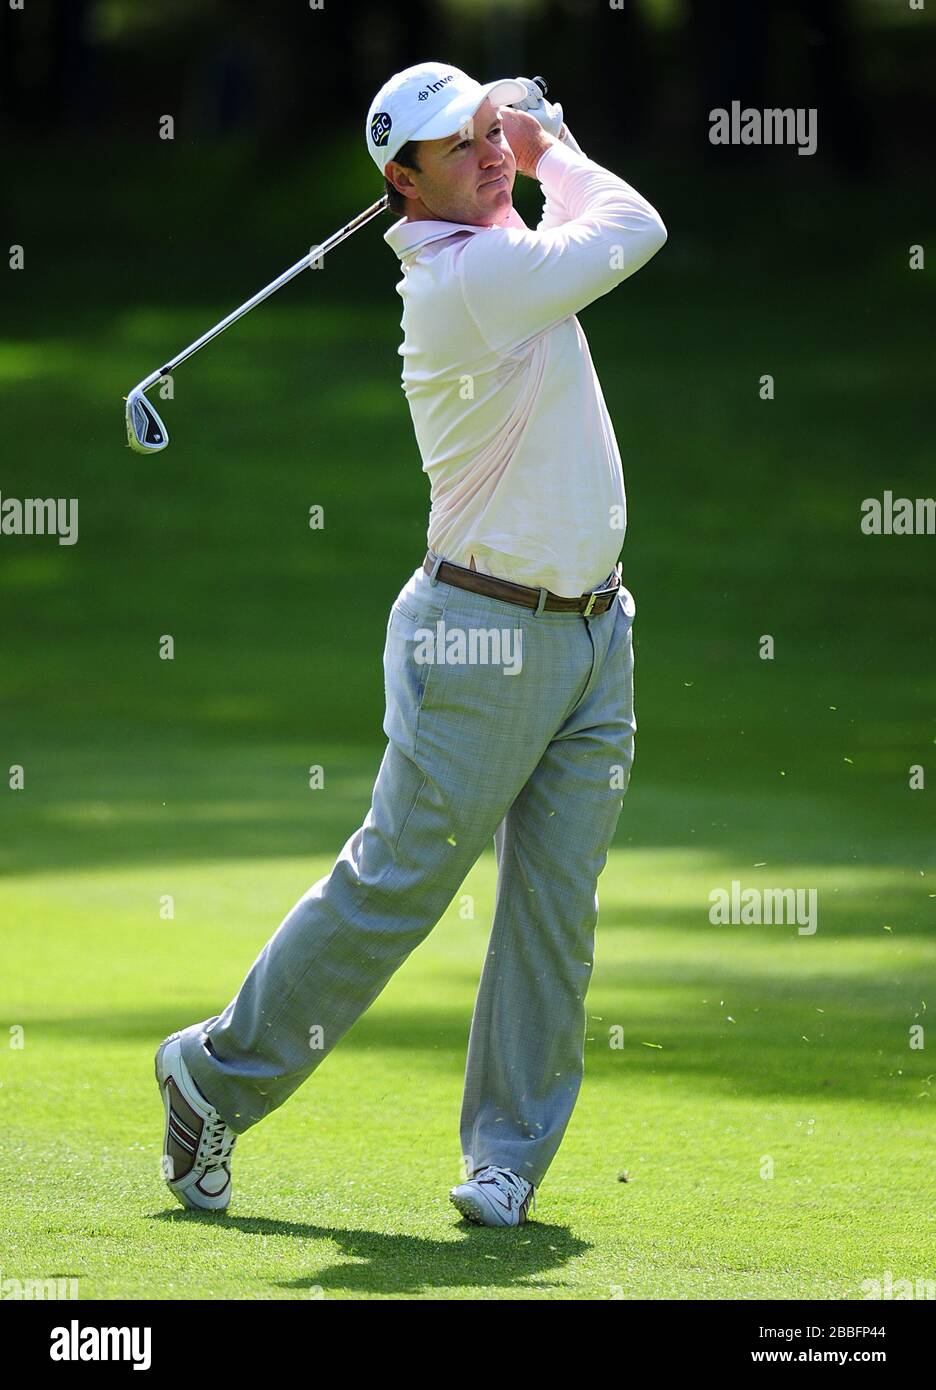 Richard Sterne d'Afrique du Sud au cours du quatrième jour du championnat BMW PGA 2013, au club de golf Wentworth. Banque D'Images